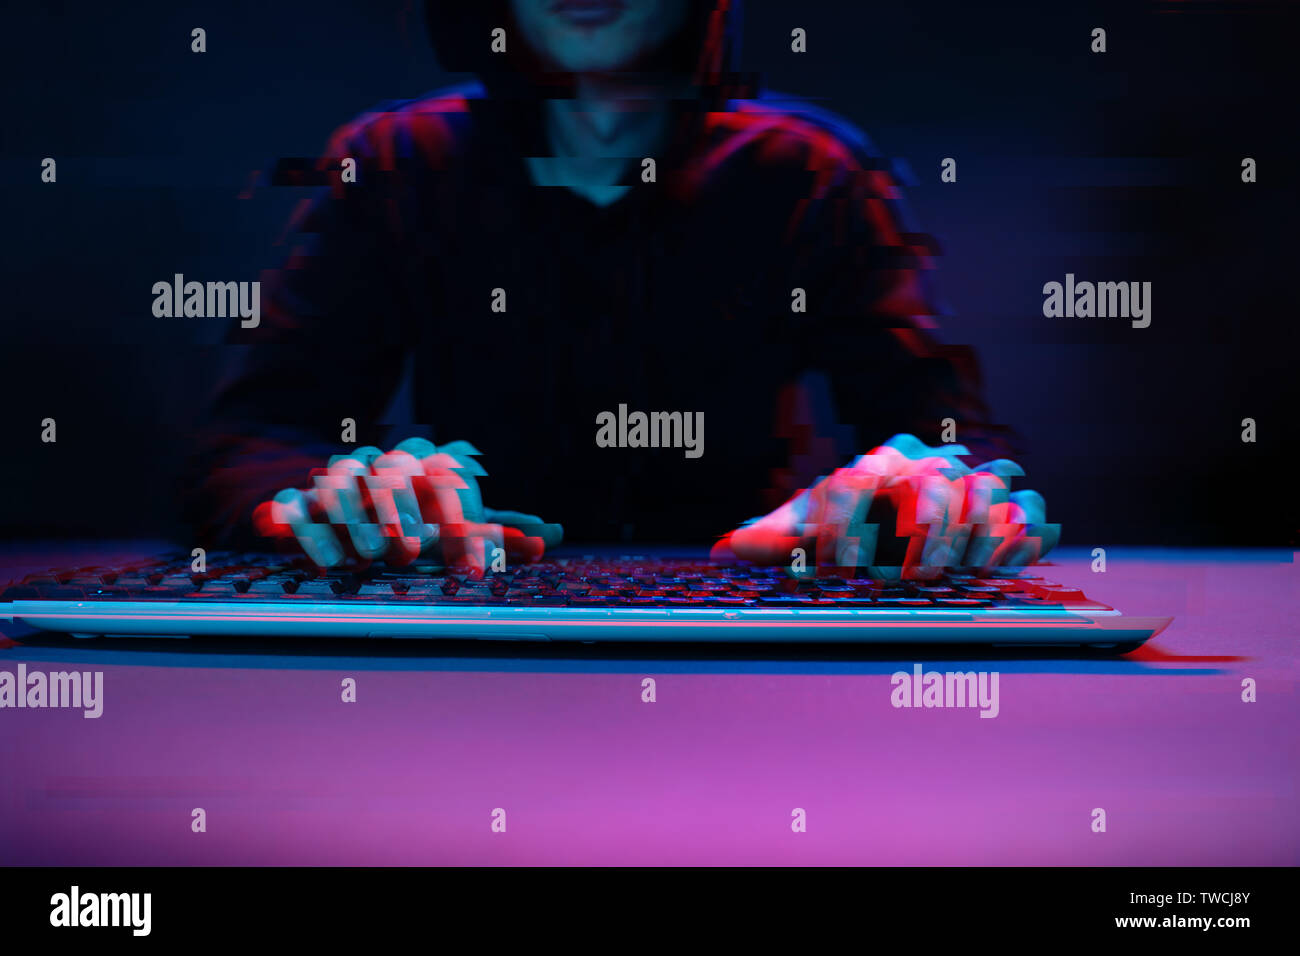 Hacker nel cofano motore funzionante con il calcolatore la digitazione del testo in camera oscura. Immagine con effetto di glitch Foto Stock